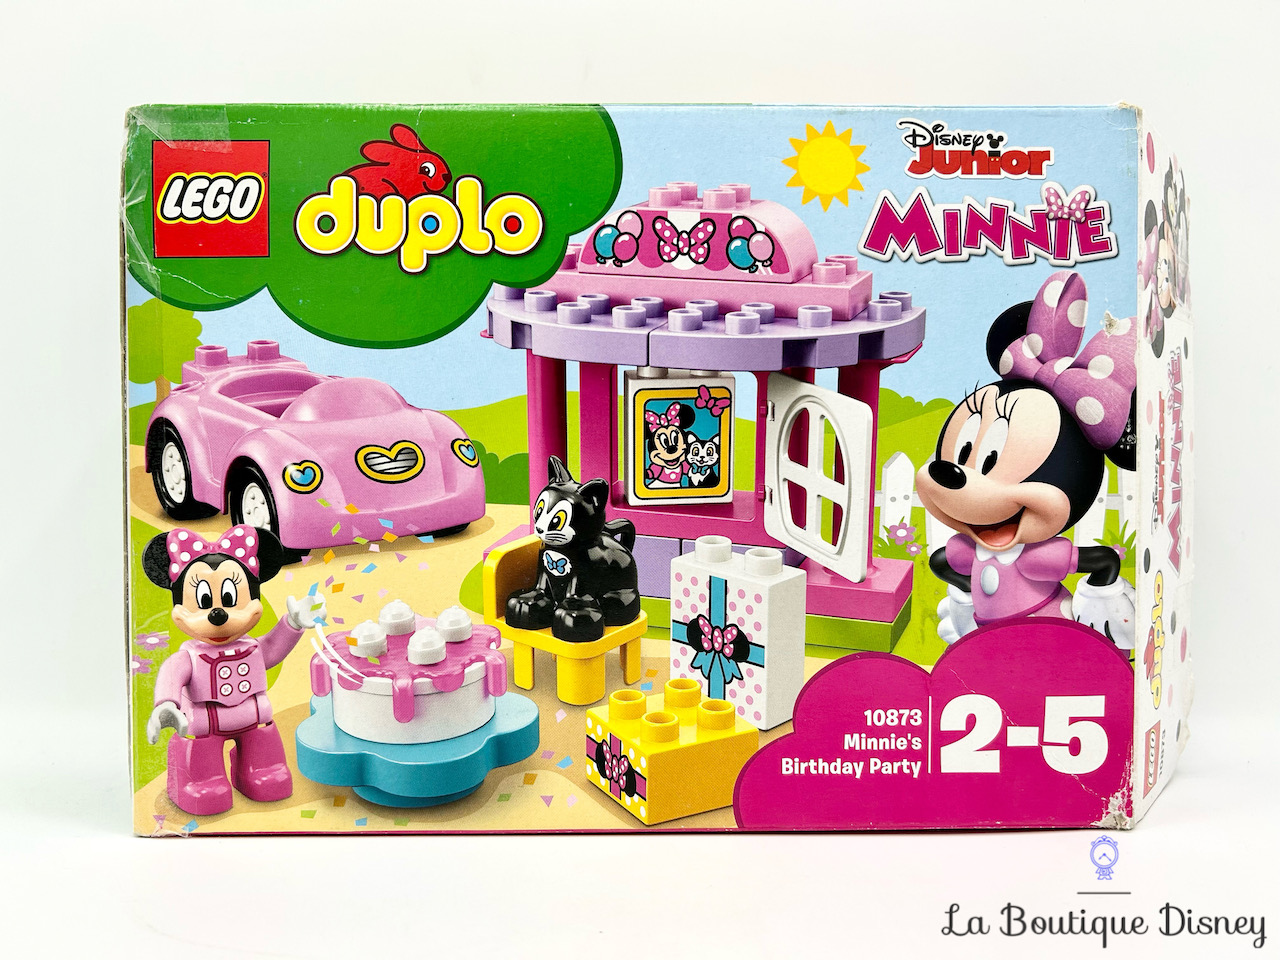 jouet-lego-duplo-10873-la-fete-anniversaire-de-minnie-disney-junior-4